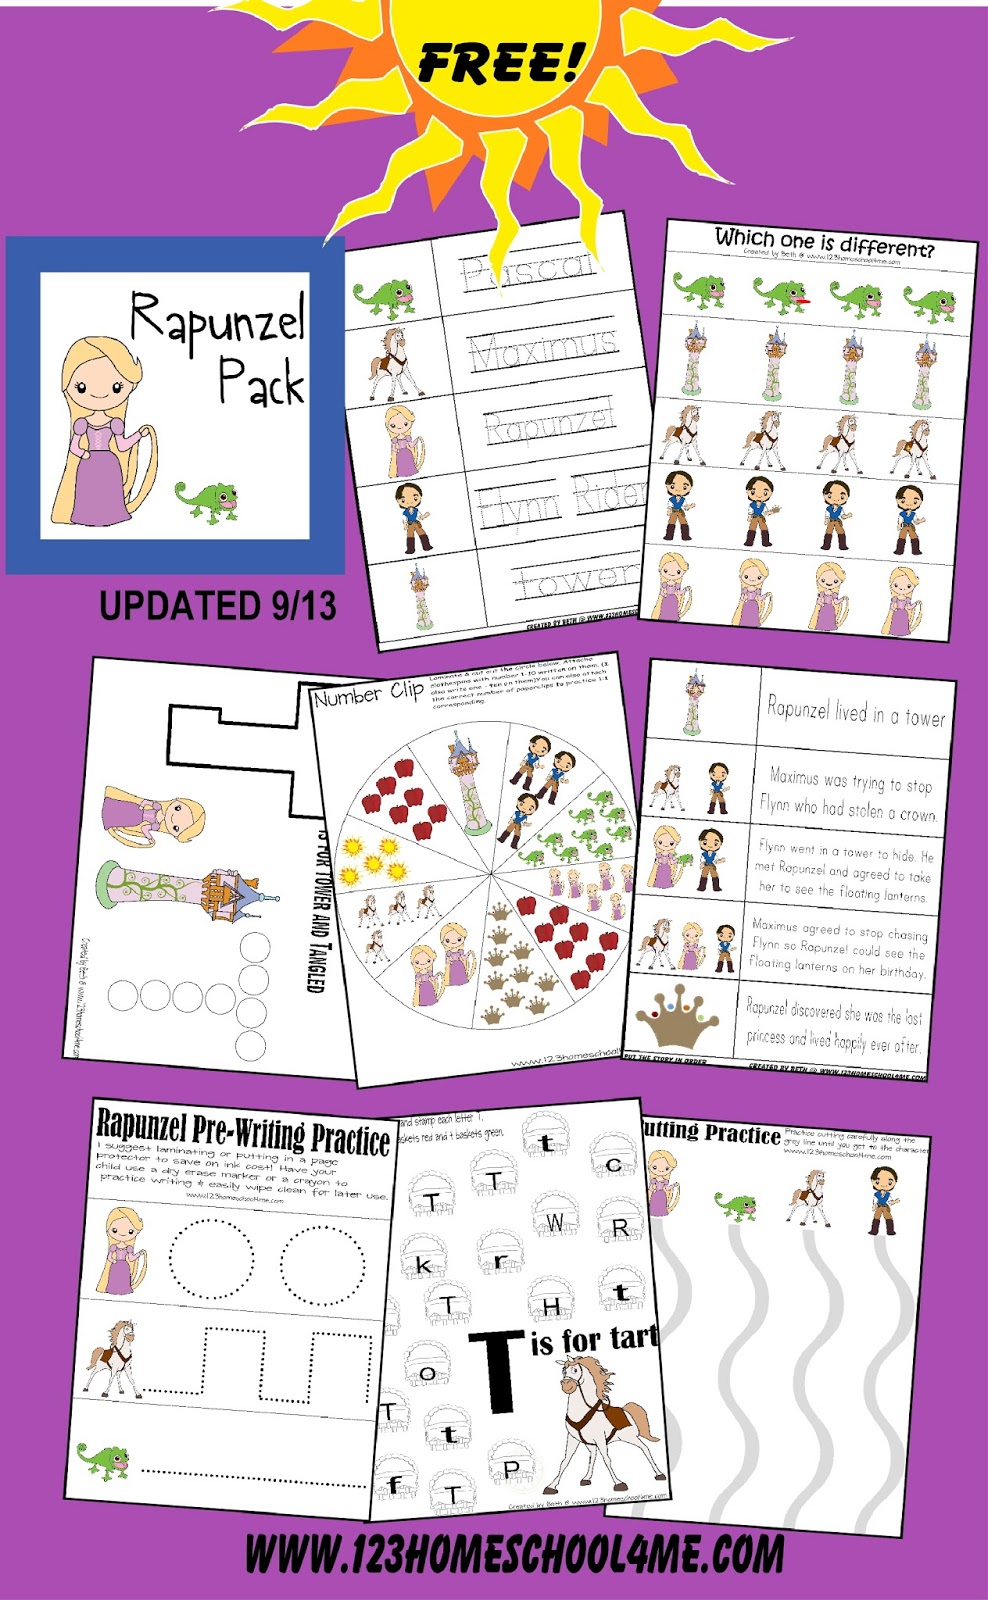 FREE Rapunzel Worksheets for Kids